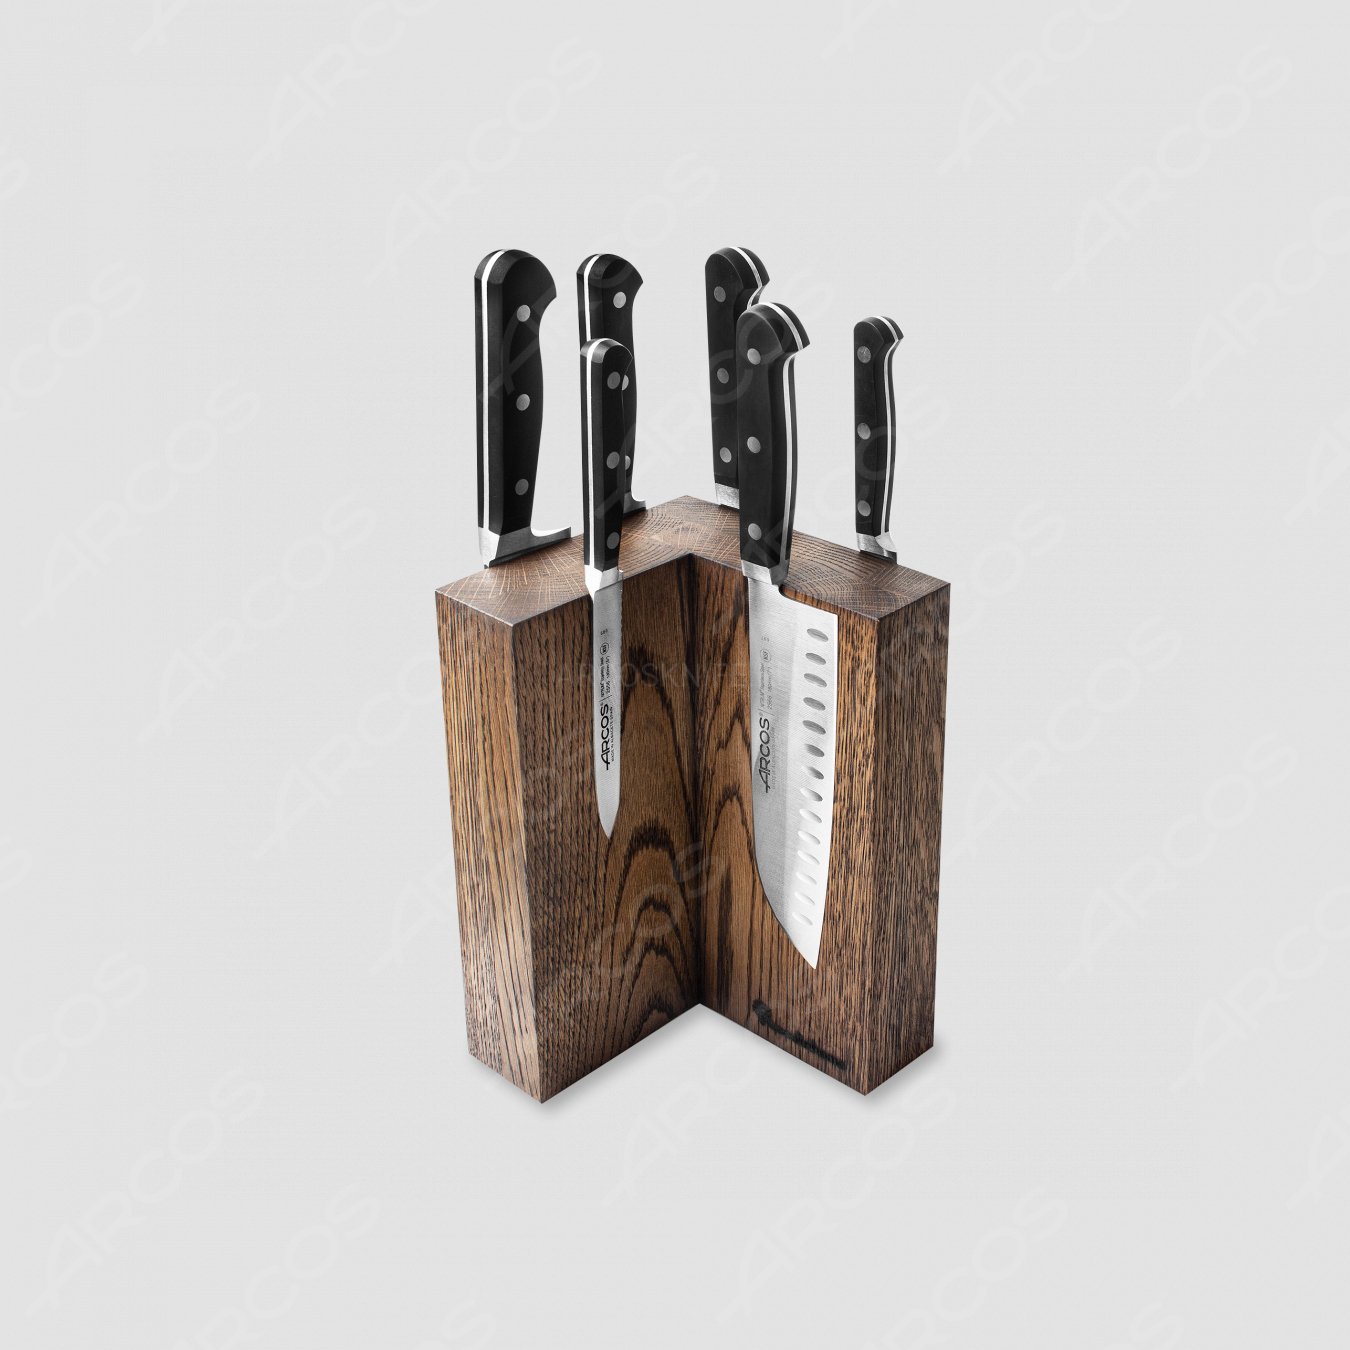 Набор из 6-ти кухонных ножей на подставке из дуба, серия Clasica, ARCOS, Испания